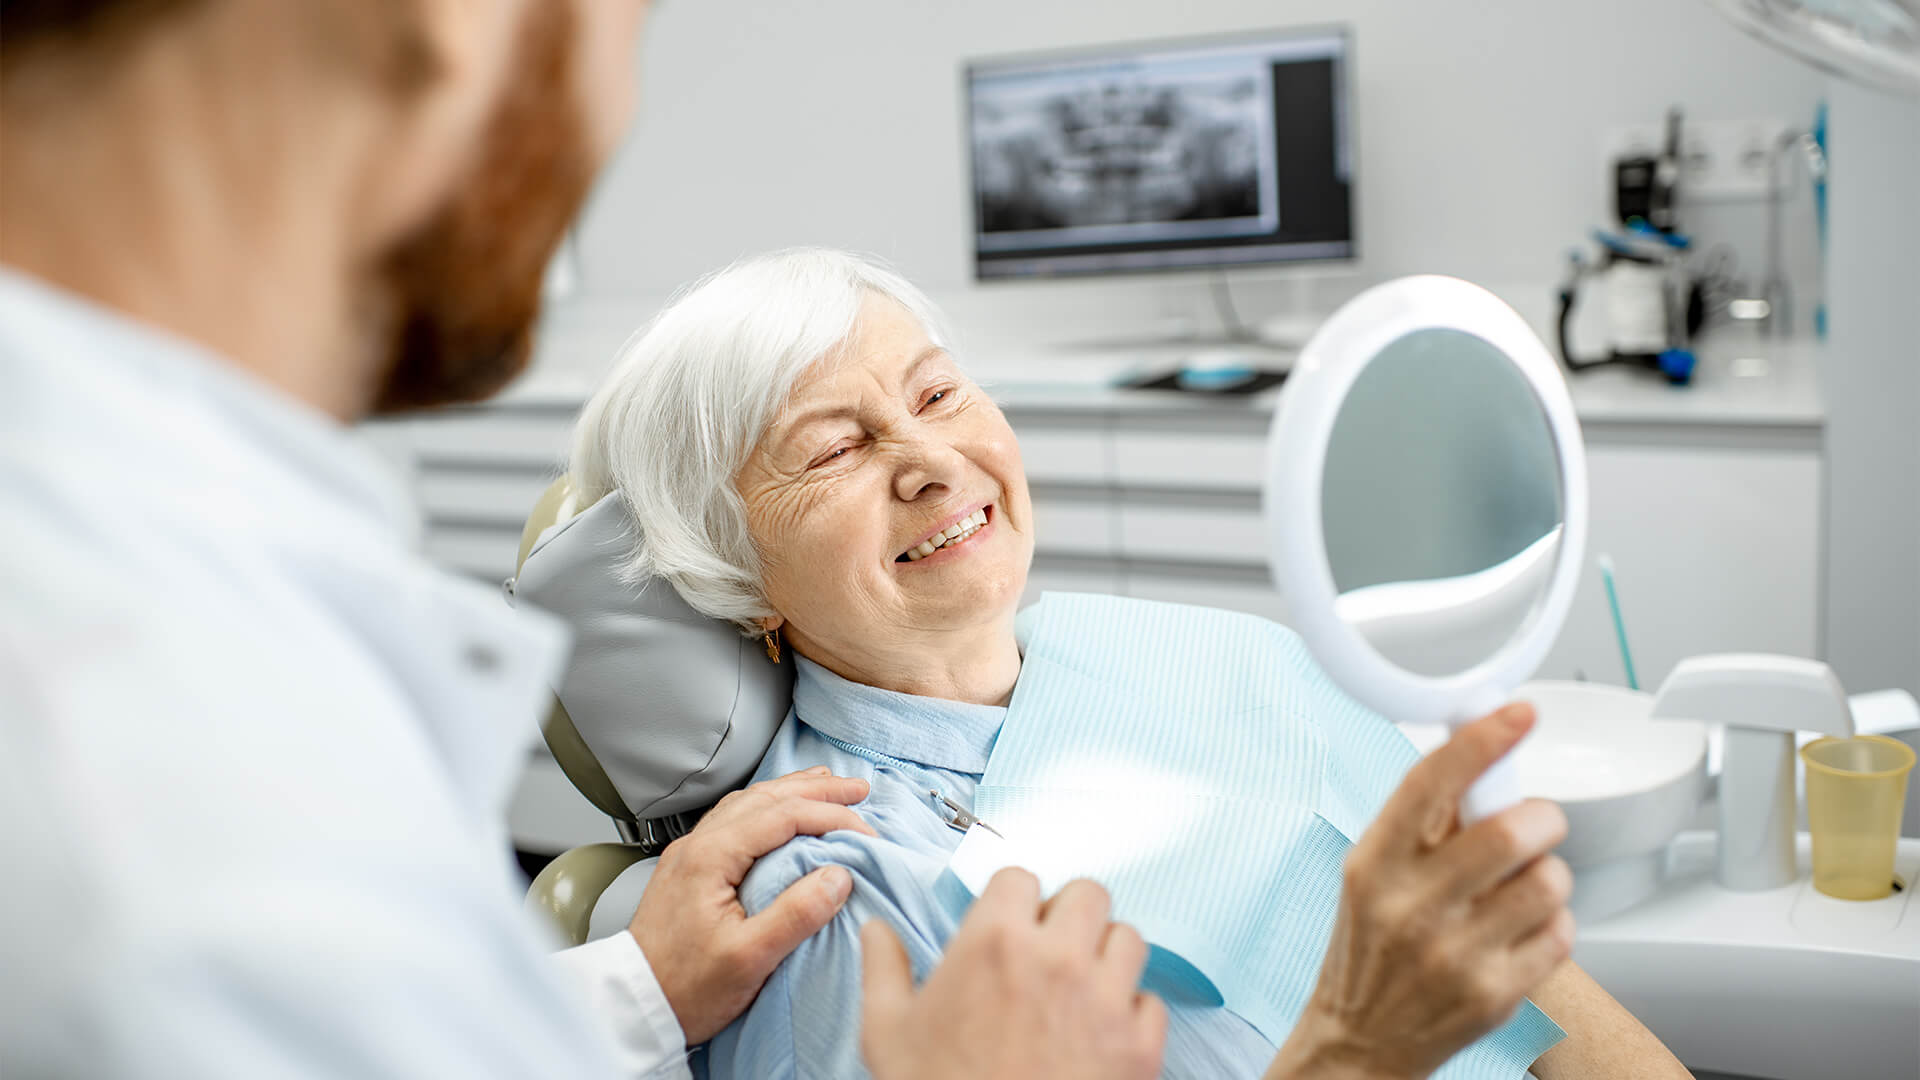 6 Dental Care Tips For Seniors